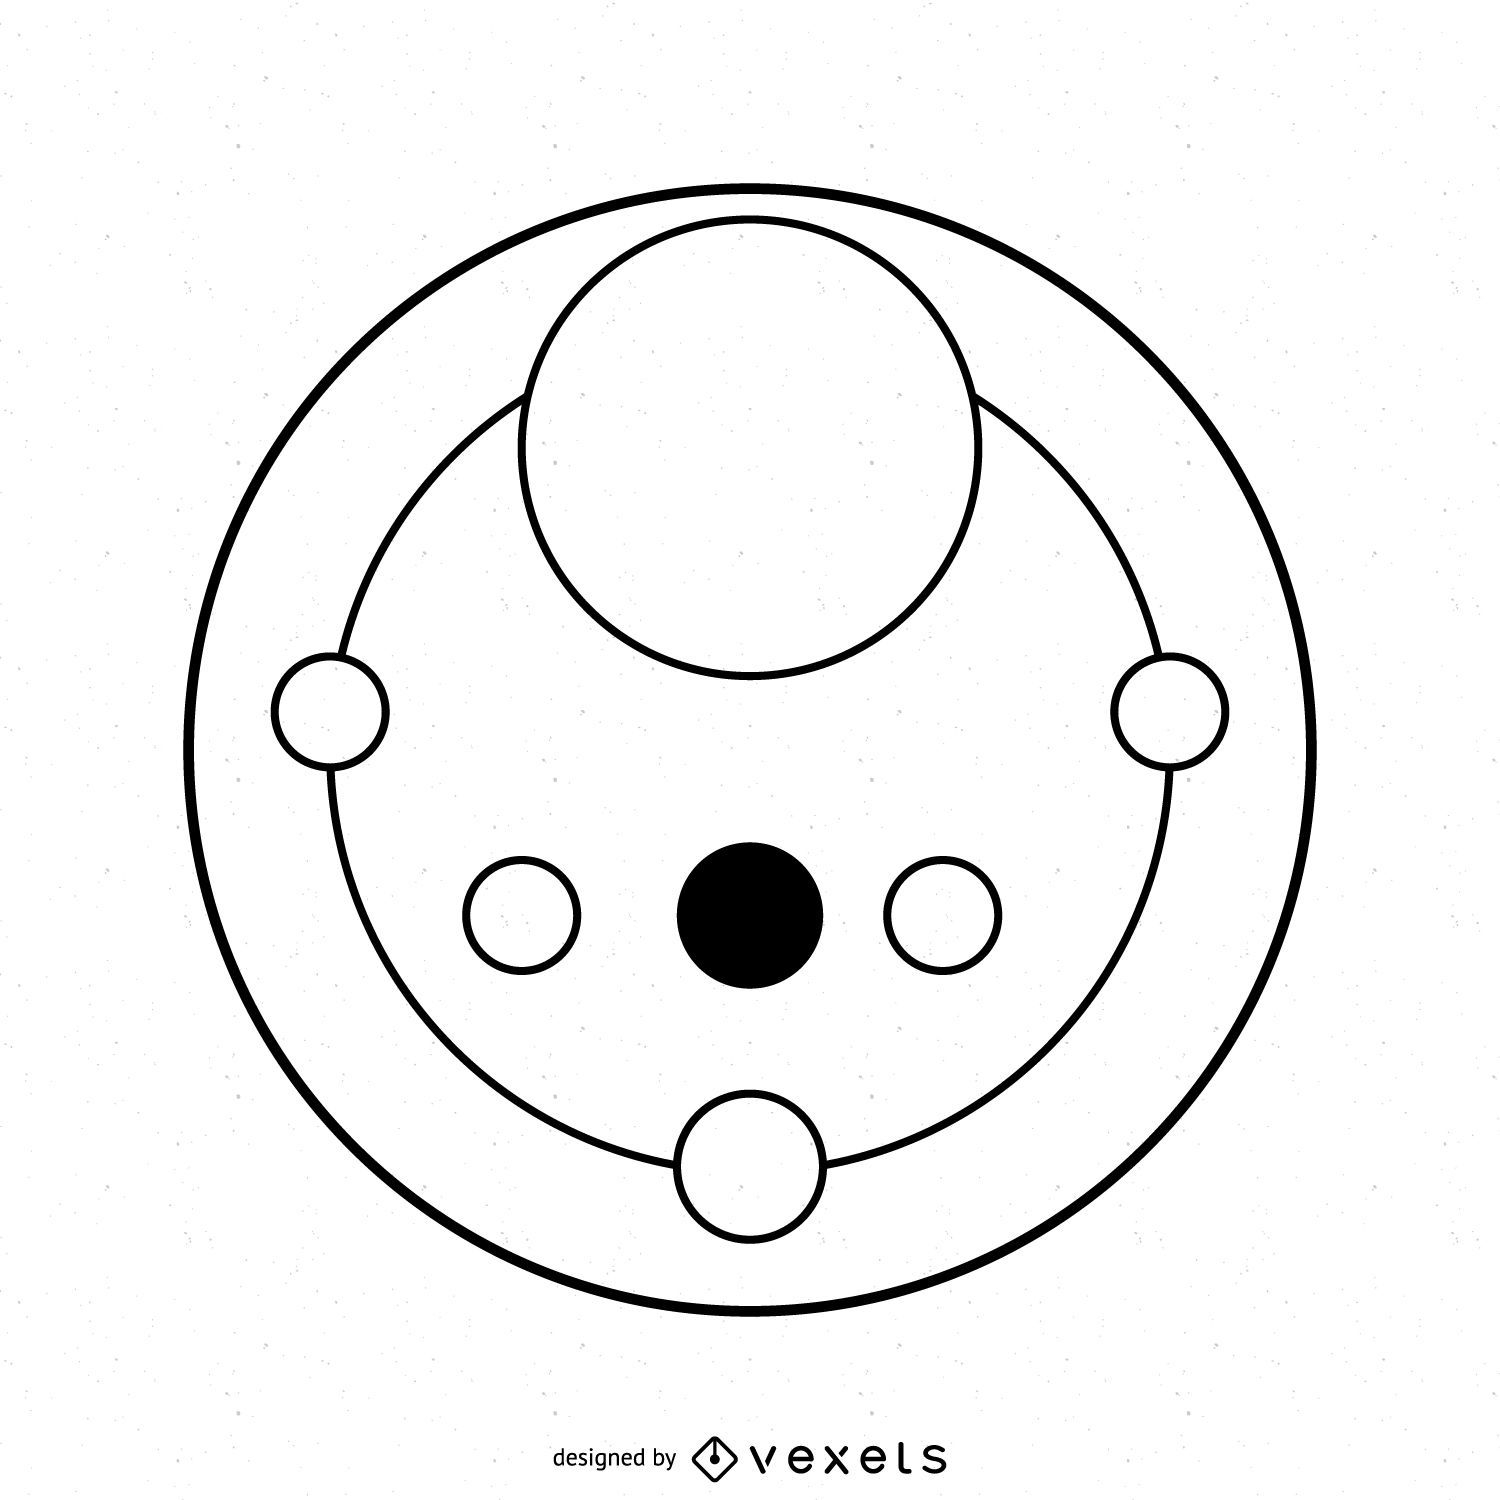 Diseño abstracto de círculos de cultivo